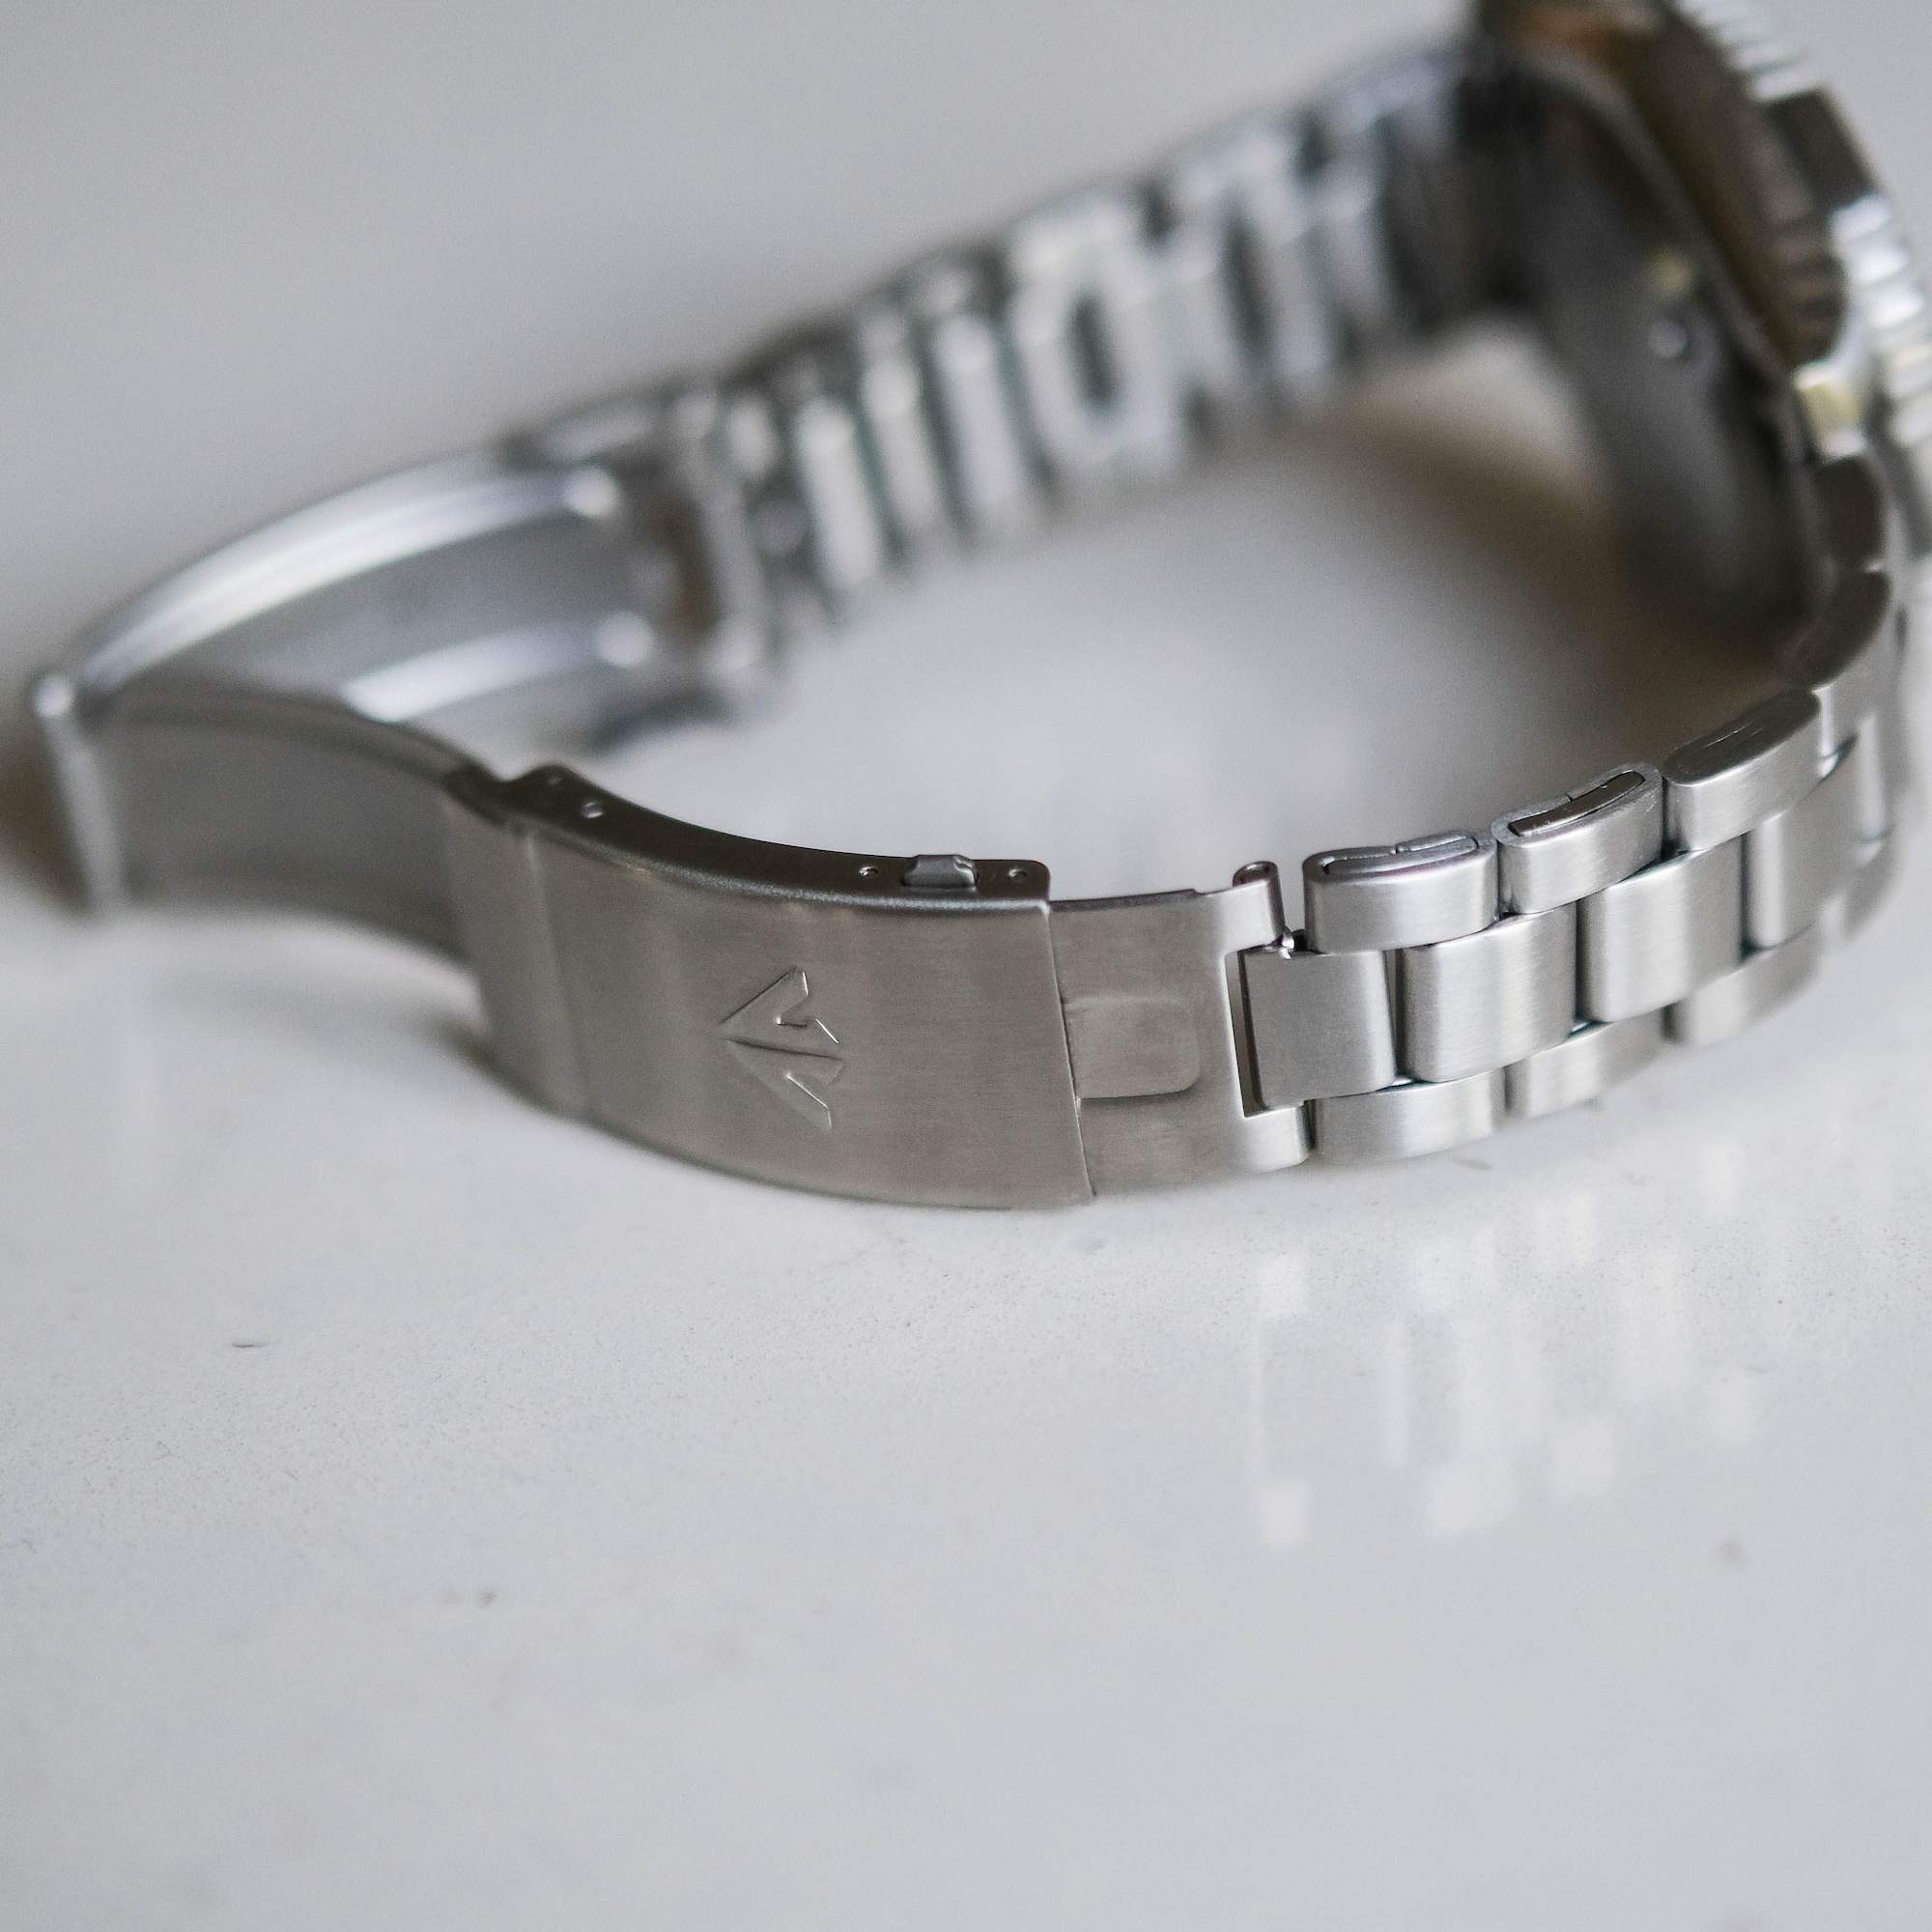 Citizen Promaster bandglied pour bracelet acier inoxydable as4020 as4025 